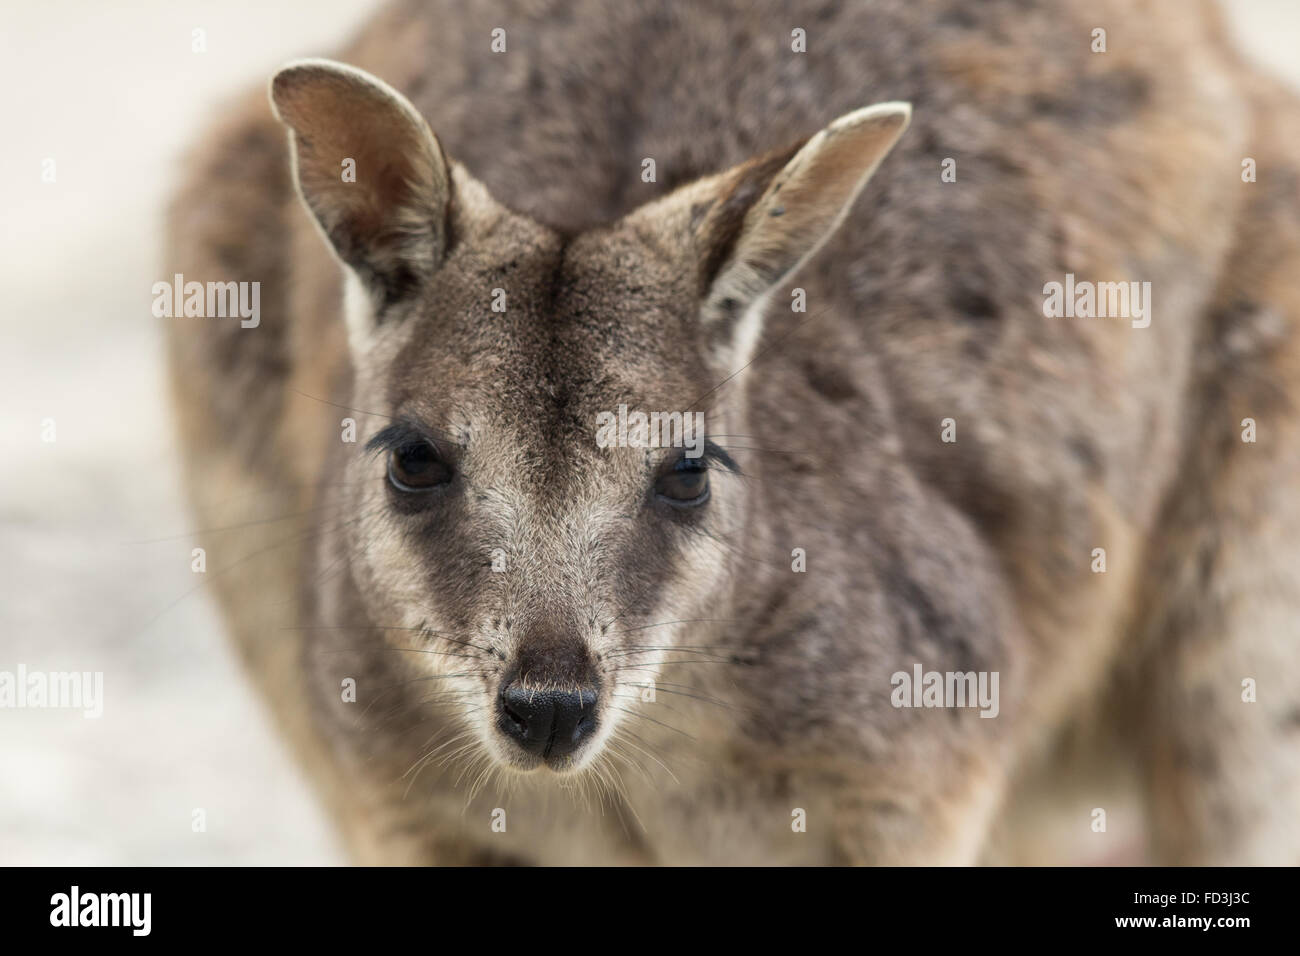 headshot of Mareeba Rock Wallaby (Petrogale mareeba) Stock Photo